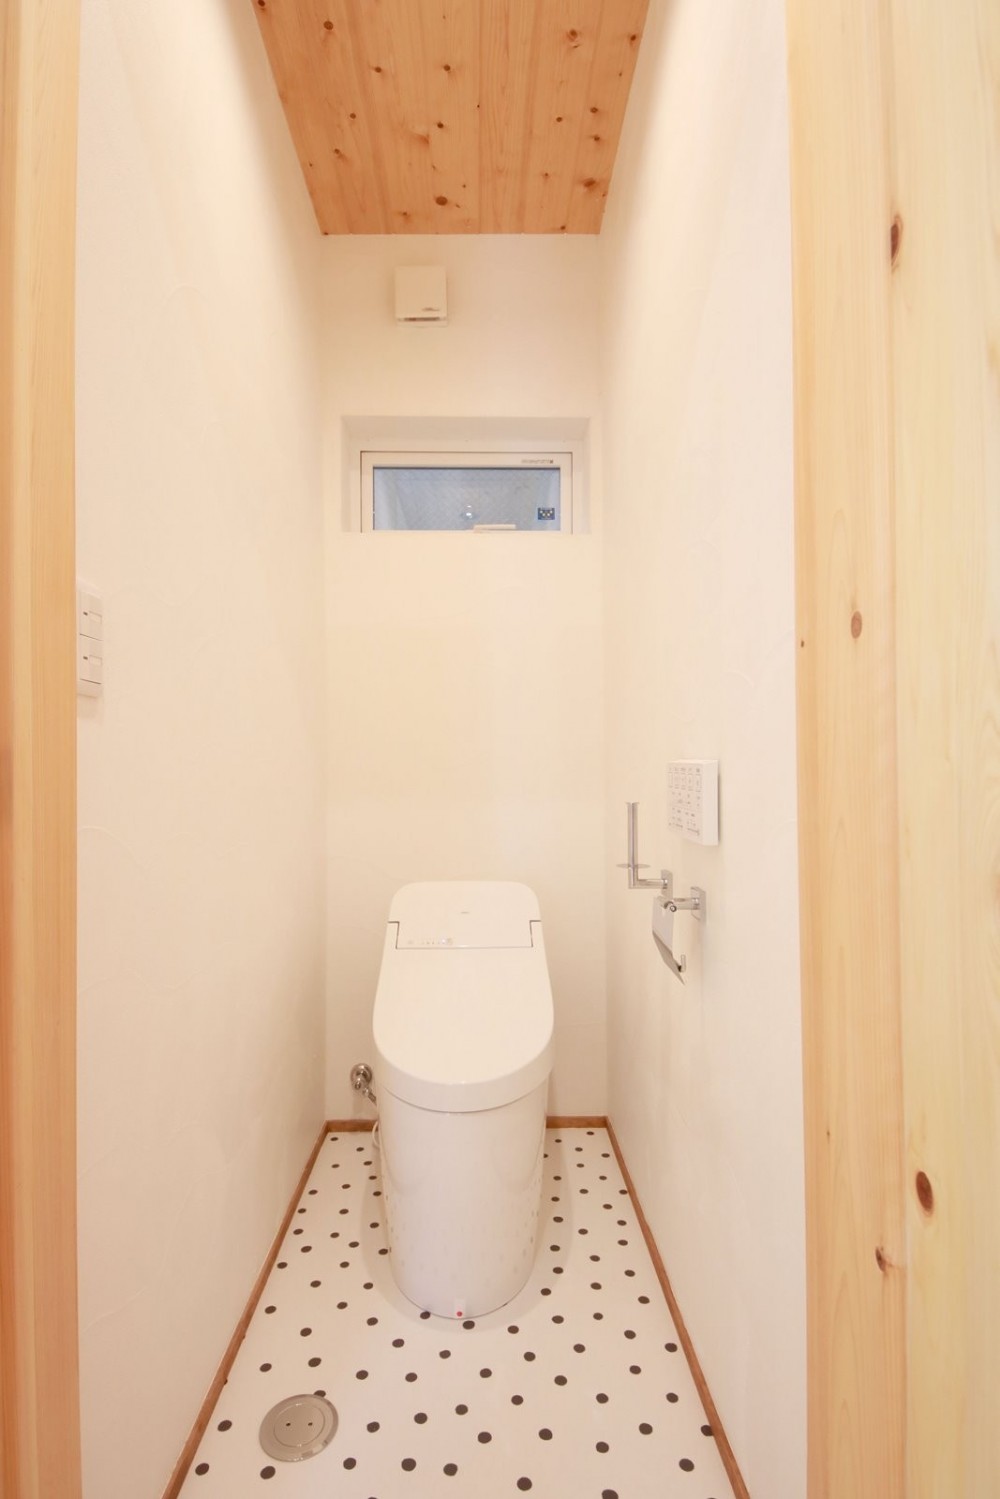 戸建て性能向上リノベーション実証プロジェクト「for LONG名古屋の家」 (トイレ)